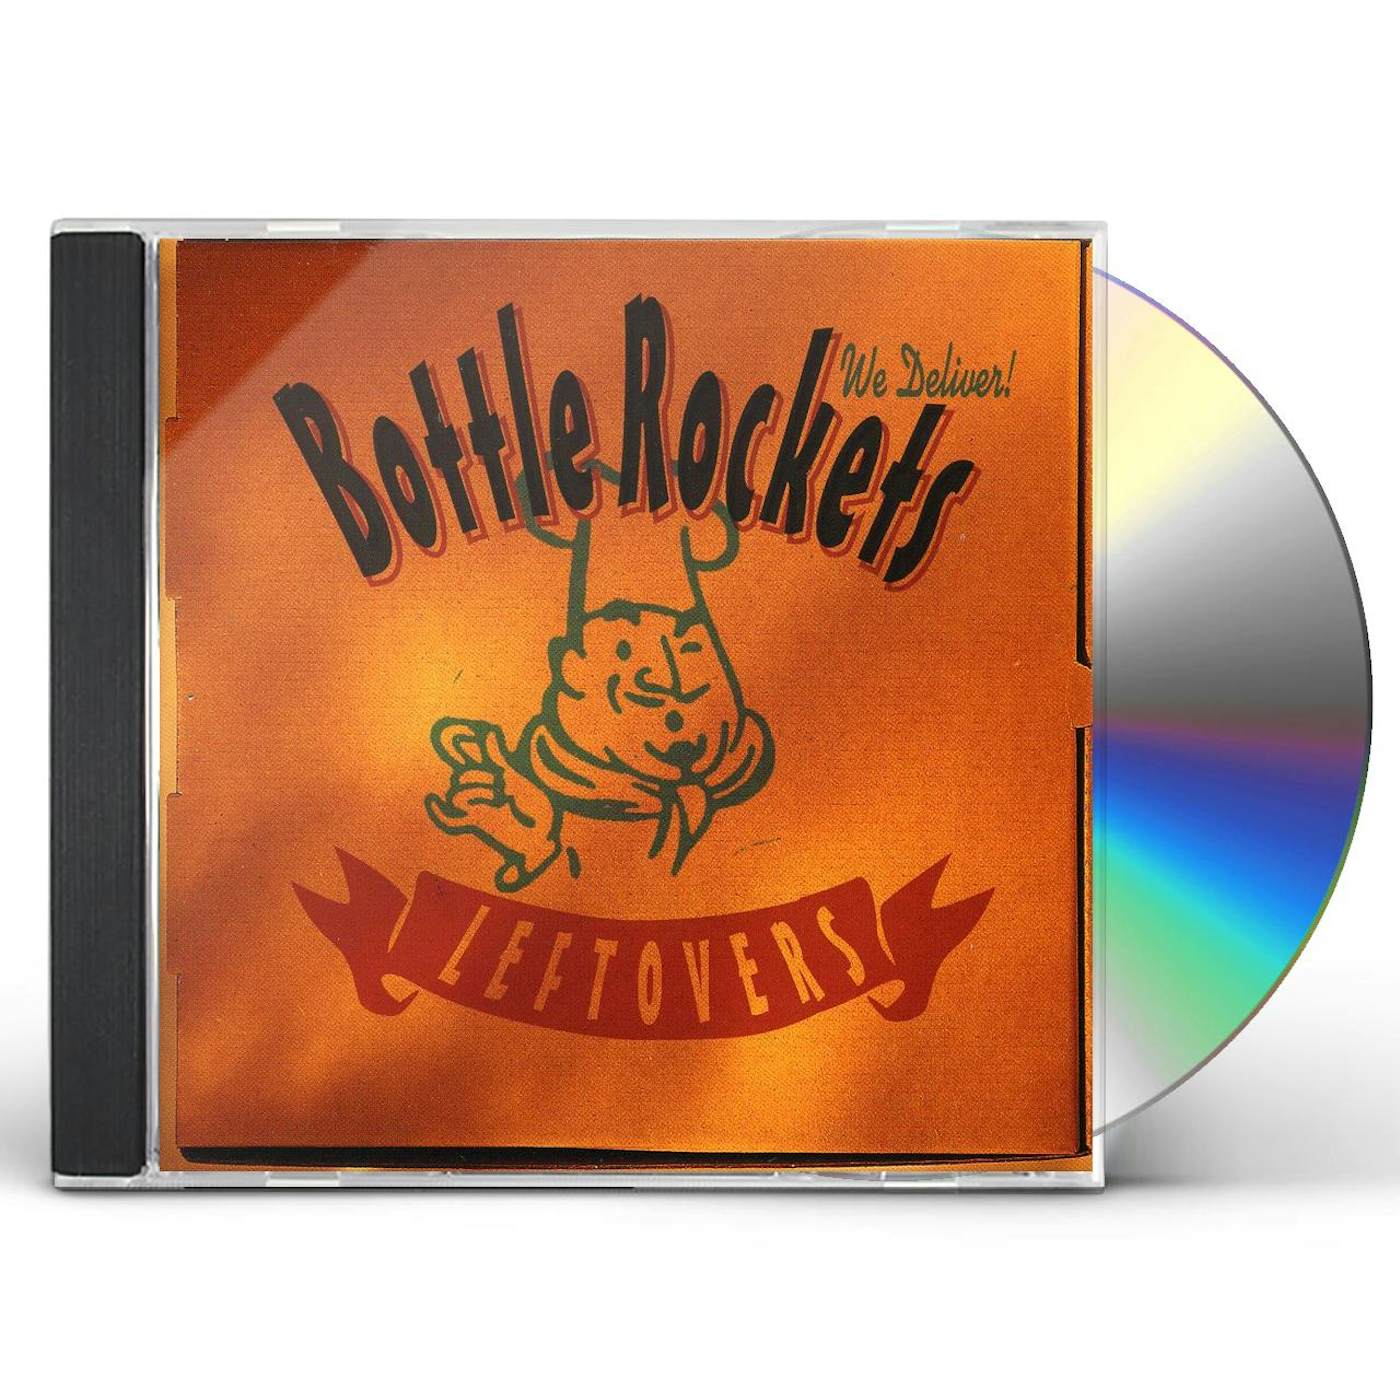 The Bottle Rockets LEFTOVERS CD